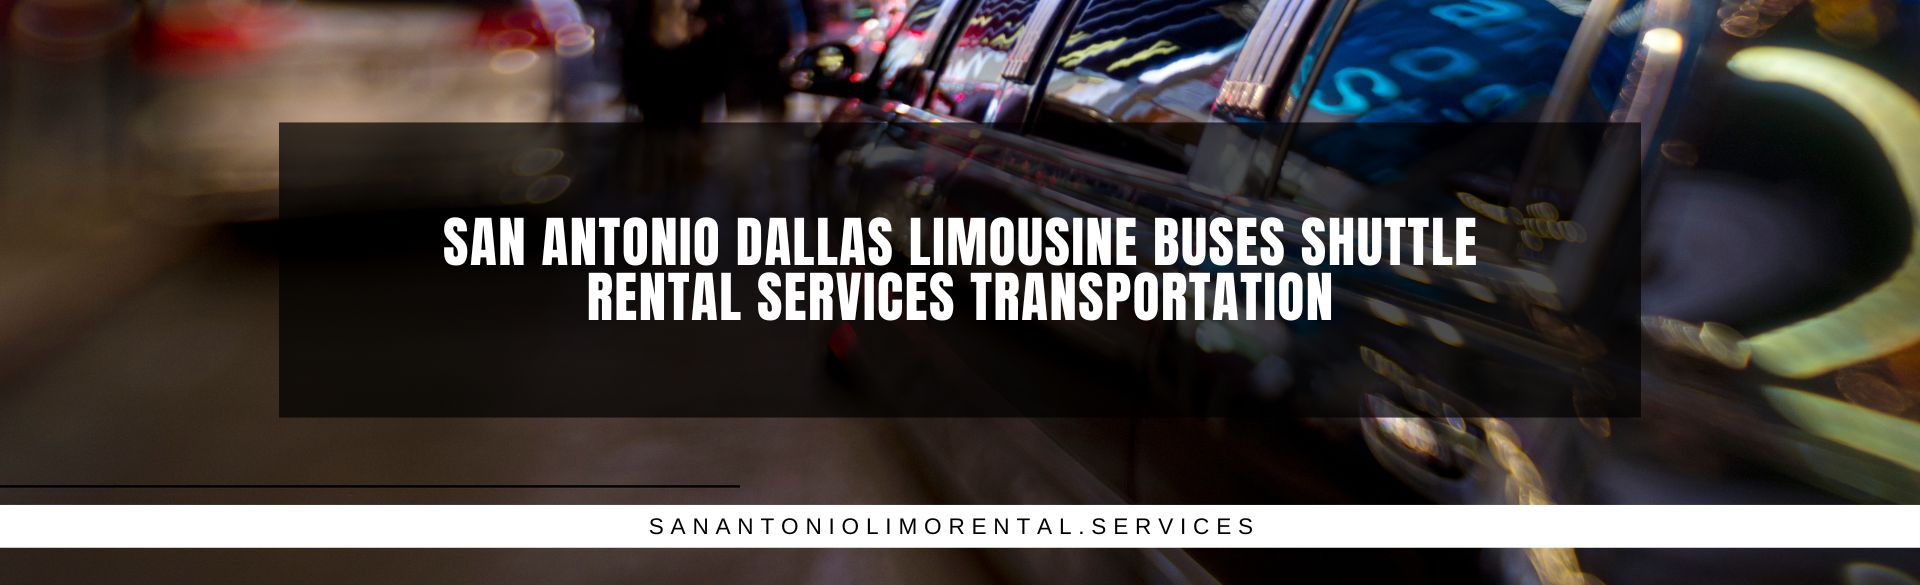 San Antonio Dallas Limousine Buses Shuttle Rental Services Transportation